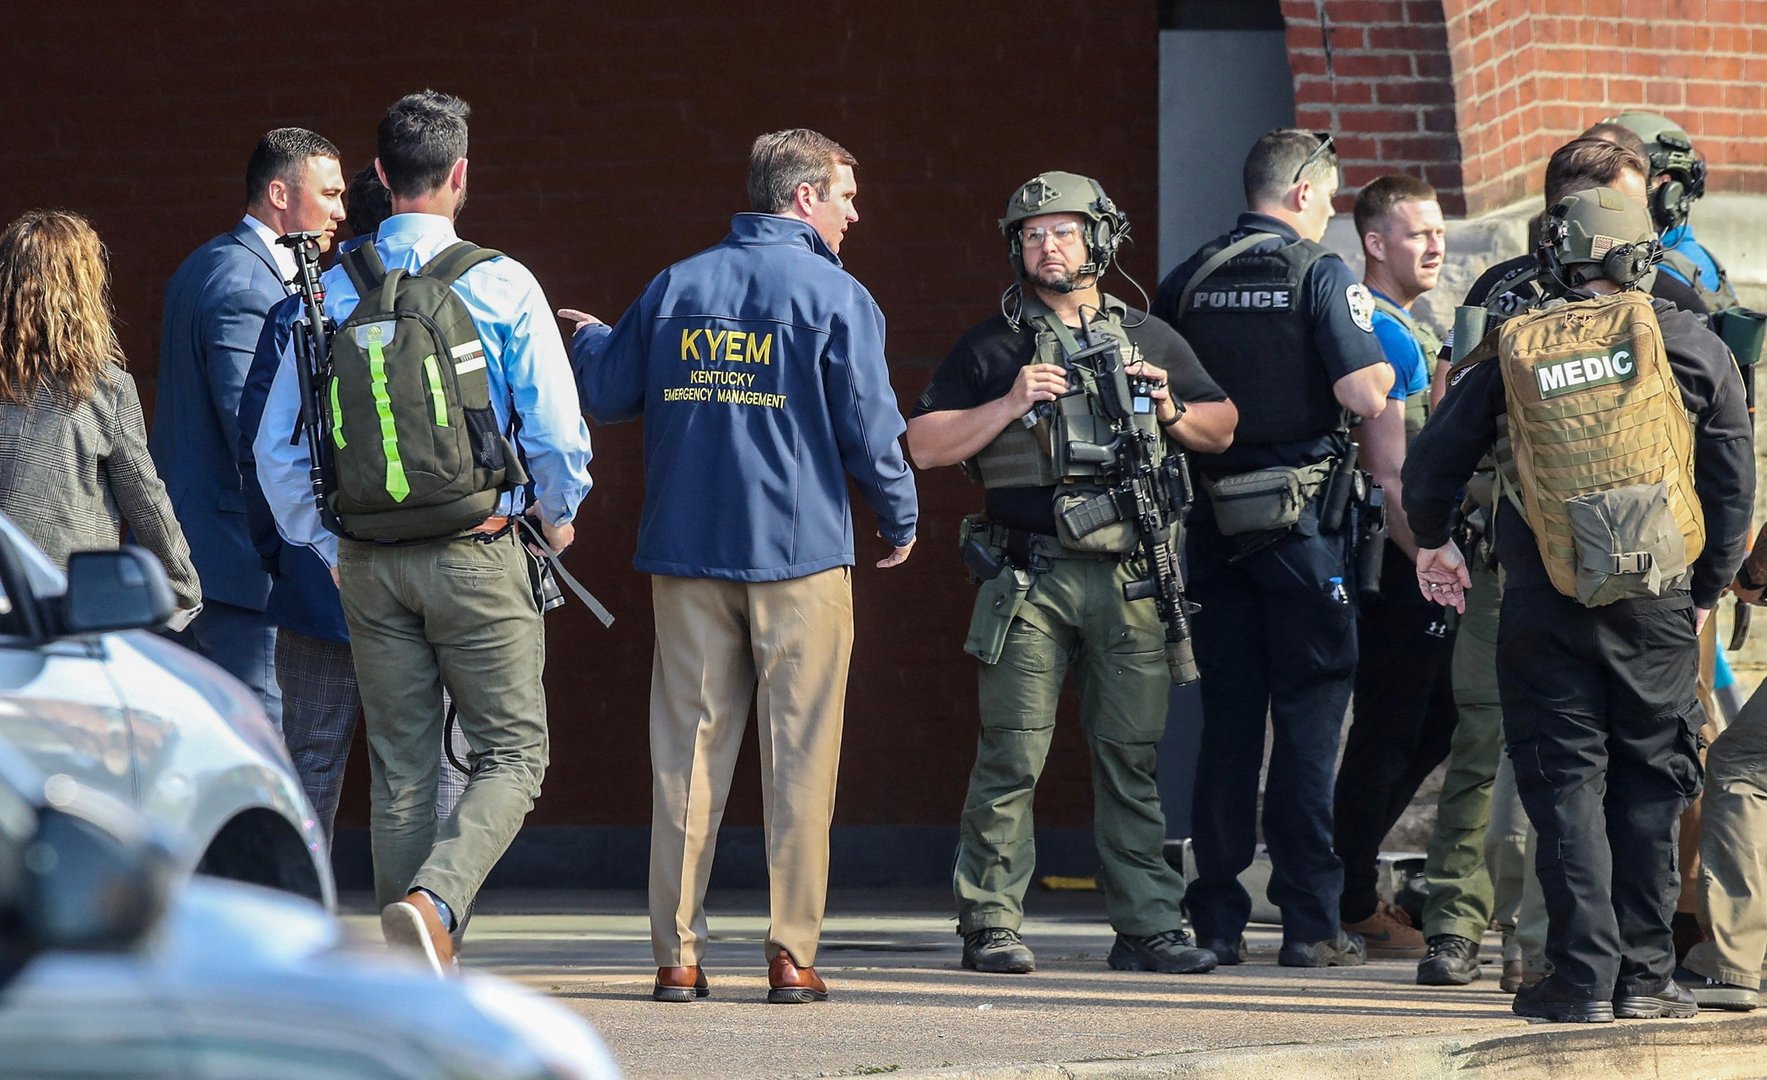 image Bank worker kills five co-workers in Louisville, Kentucky shooting (Update)